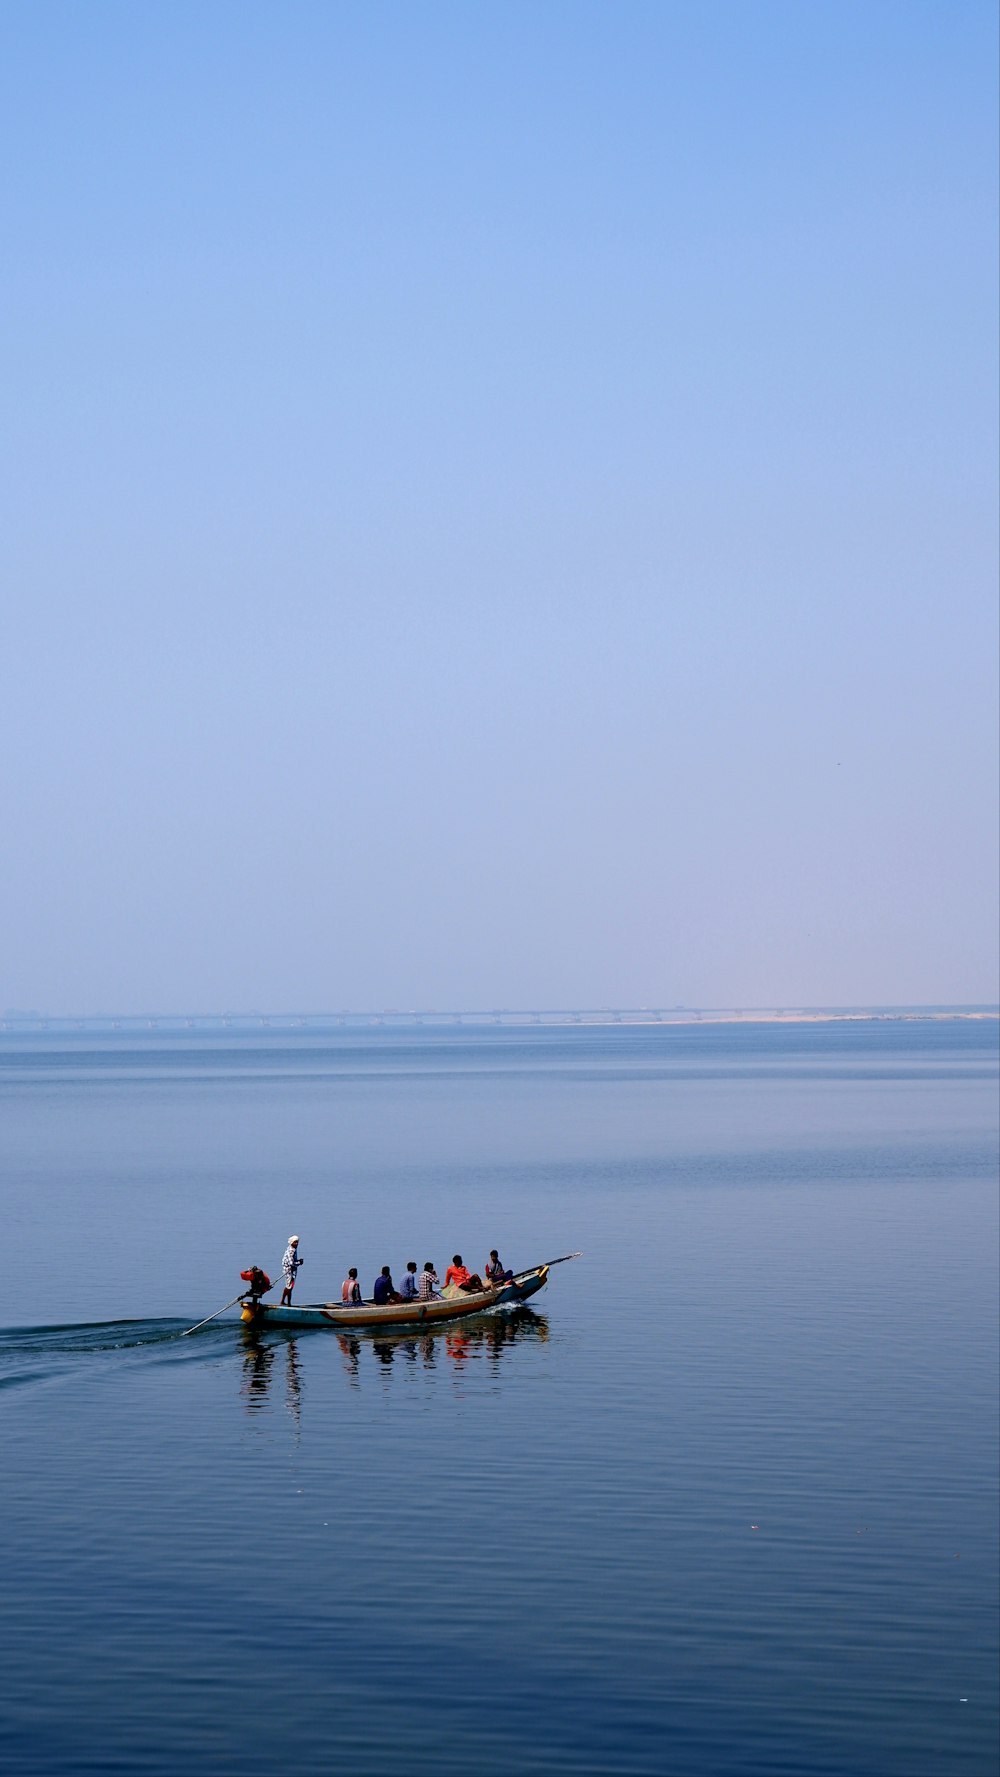 un groupe de personnes dans une petite embarcation sur un grand plan d’eau